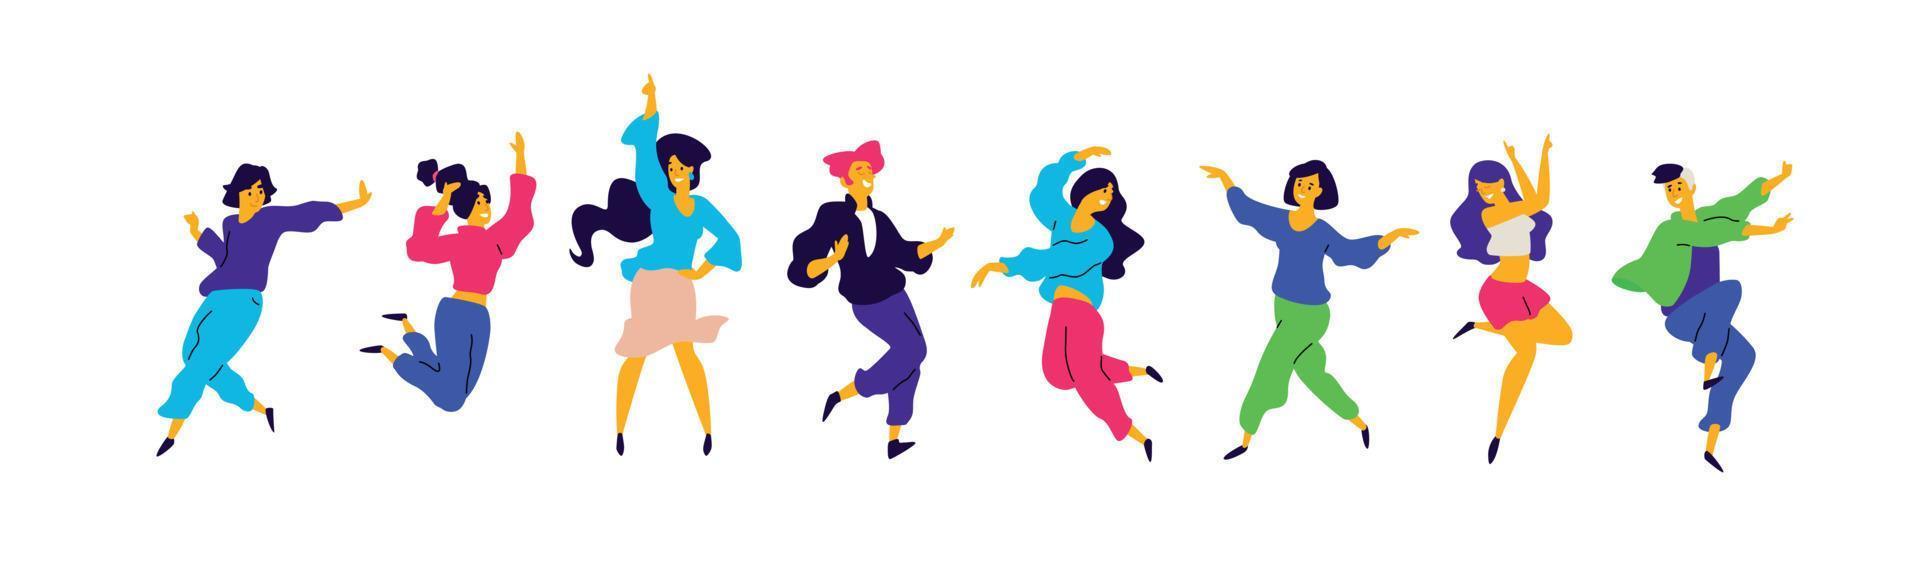 en grupp unga glada tjejer och killar dansar. vektor. illustrationer av män och kvinnor. platt stil. en grupp glada tonåringar dansar och har roligt. vektor